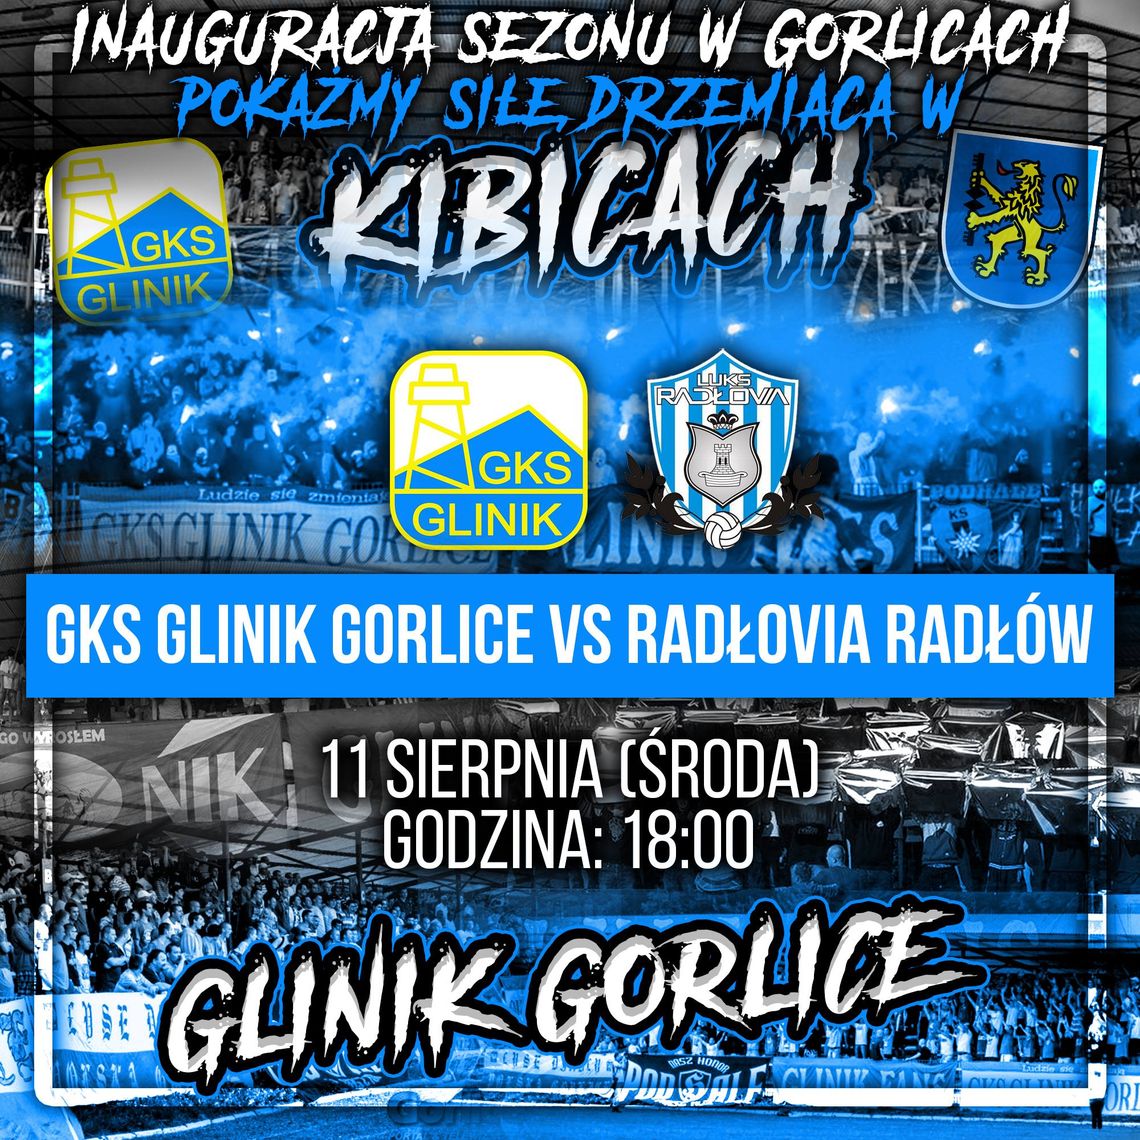 Inauguracja sezonu w Gorlicach: GKS Glinik Gorlice vs Radłovia Radłów